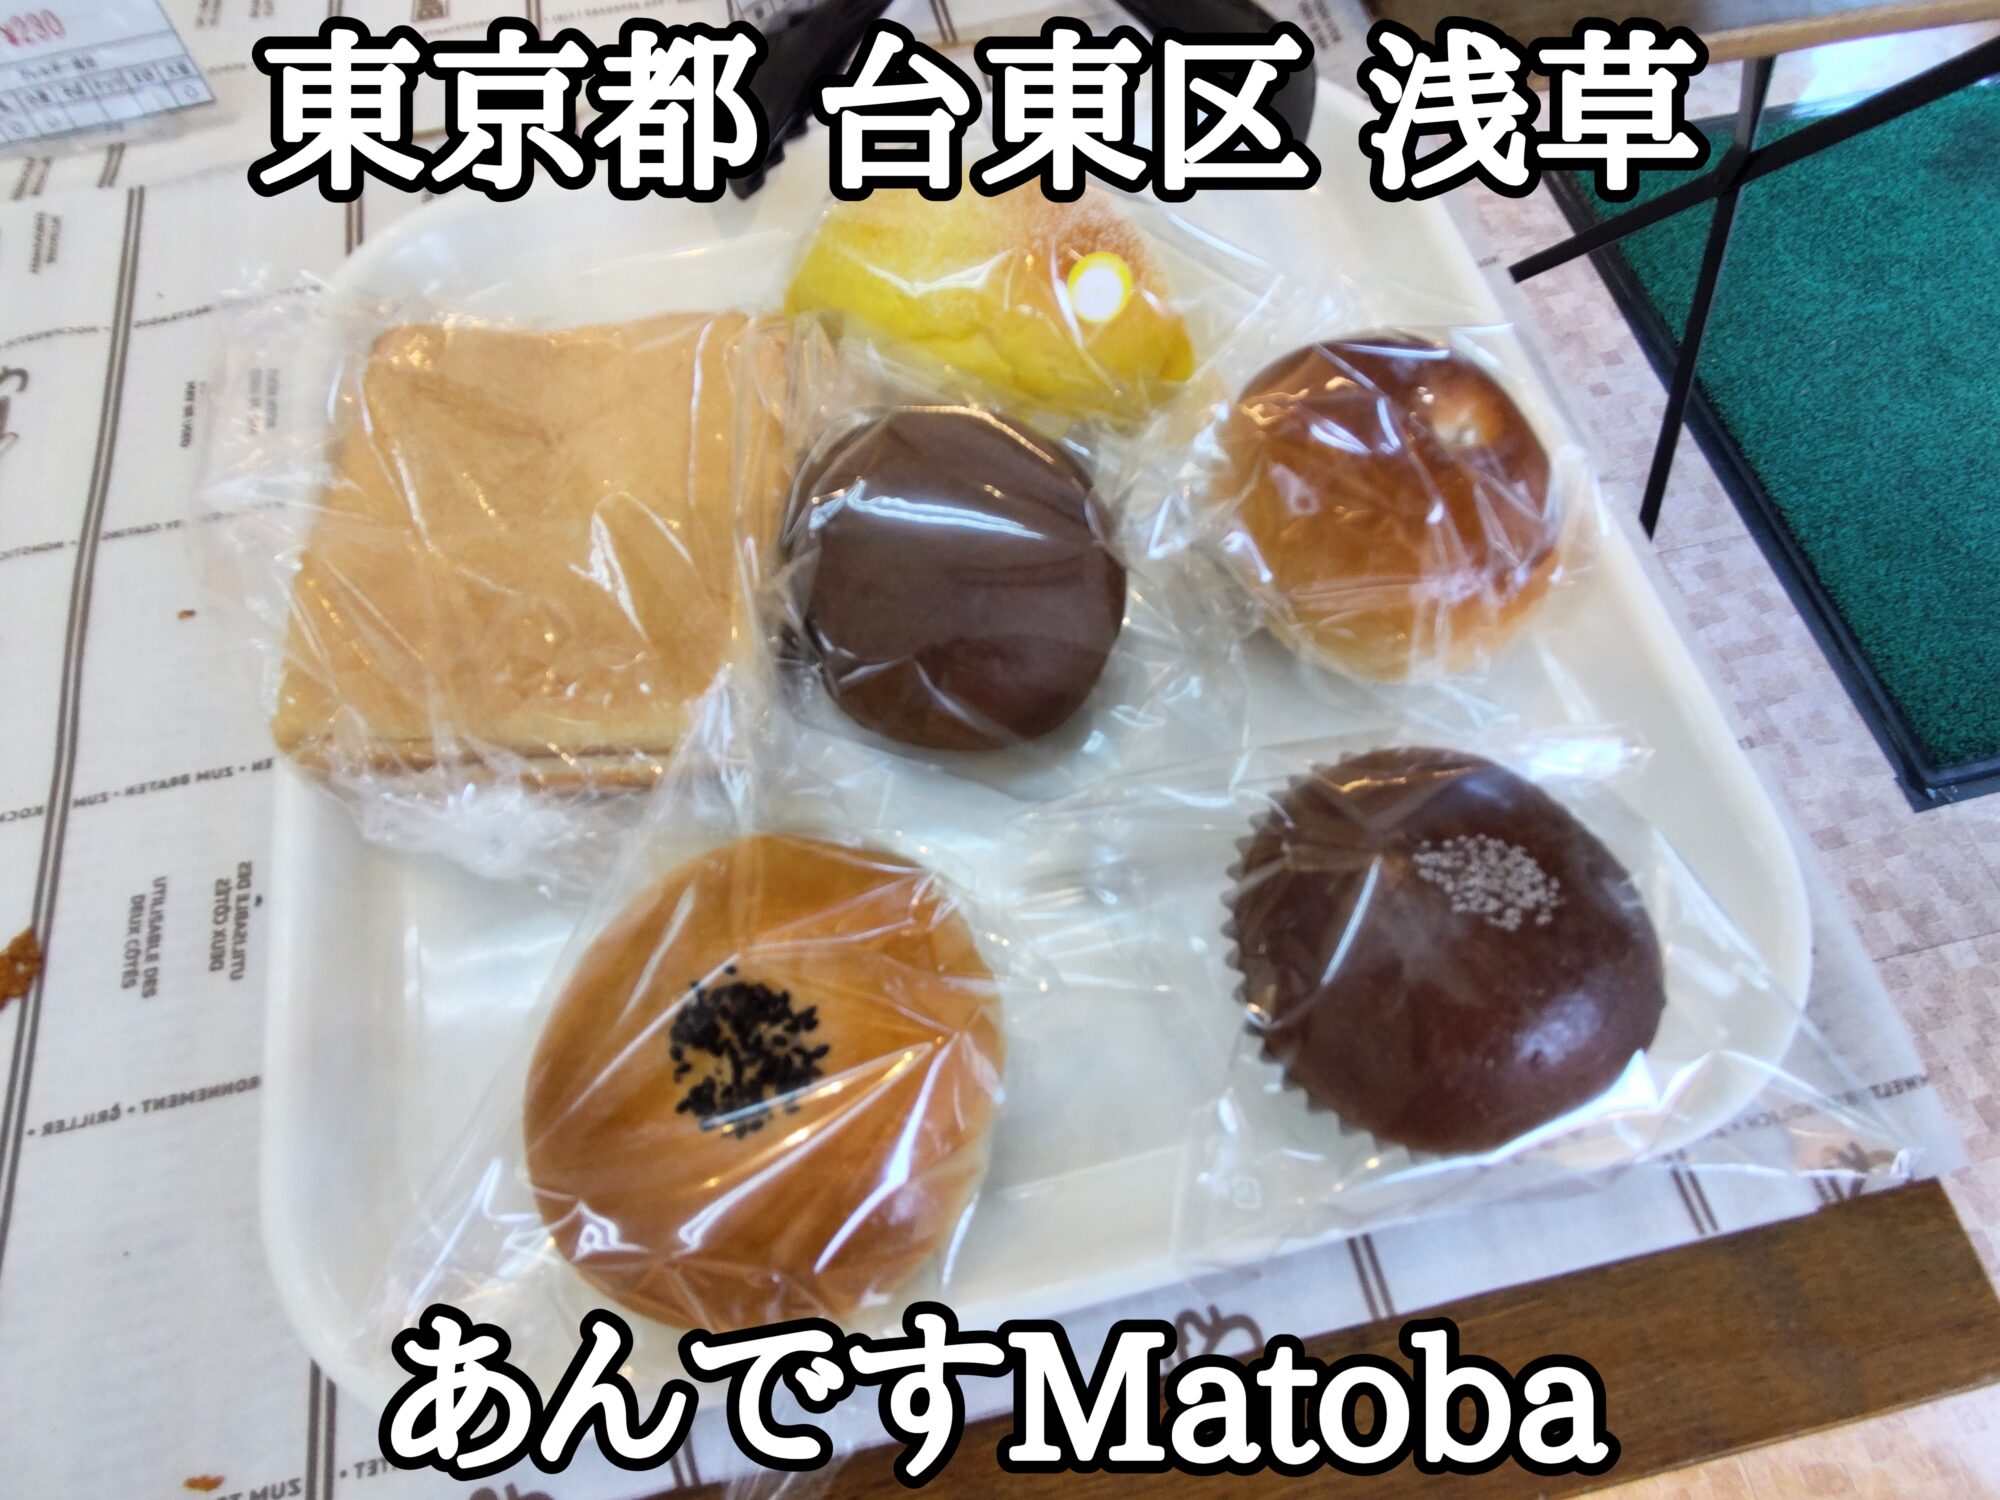 【東京都】【台東区】【浅草】「ホームベーカリーあんですMatoba / 的場製餡所」子供の頃食べていた懐かしのあんぱんです